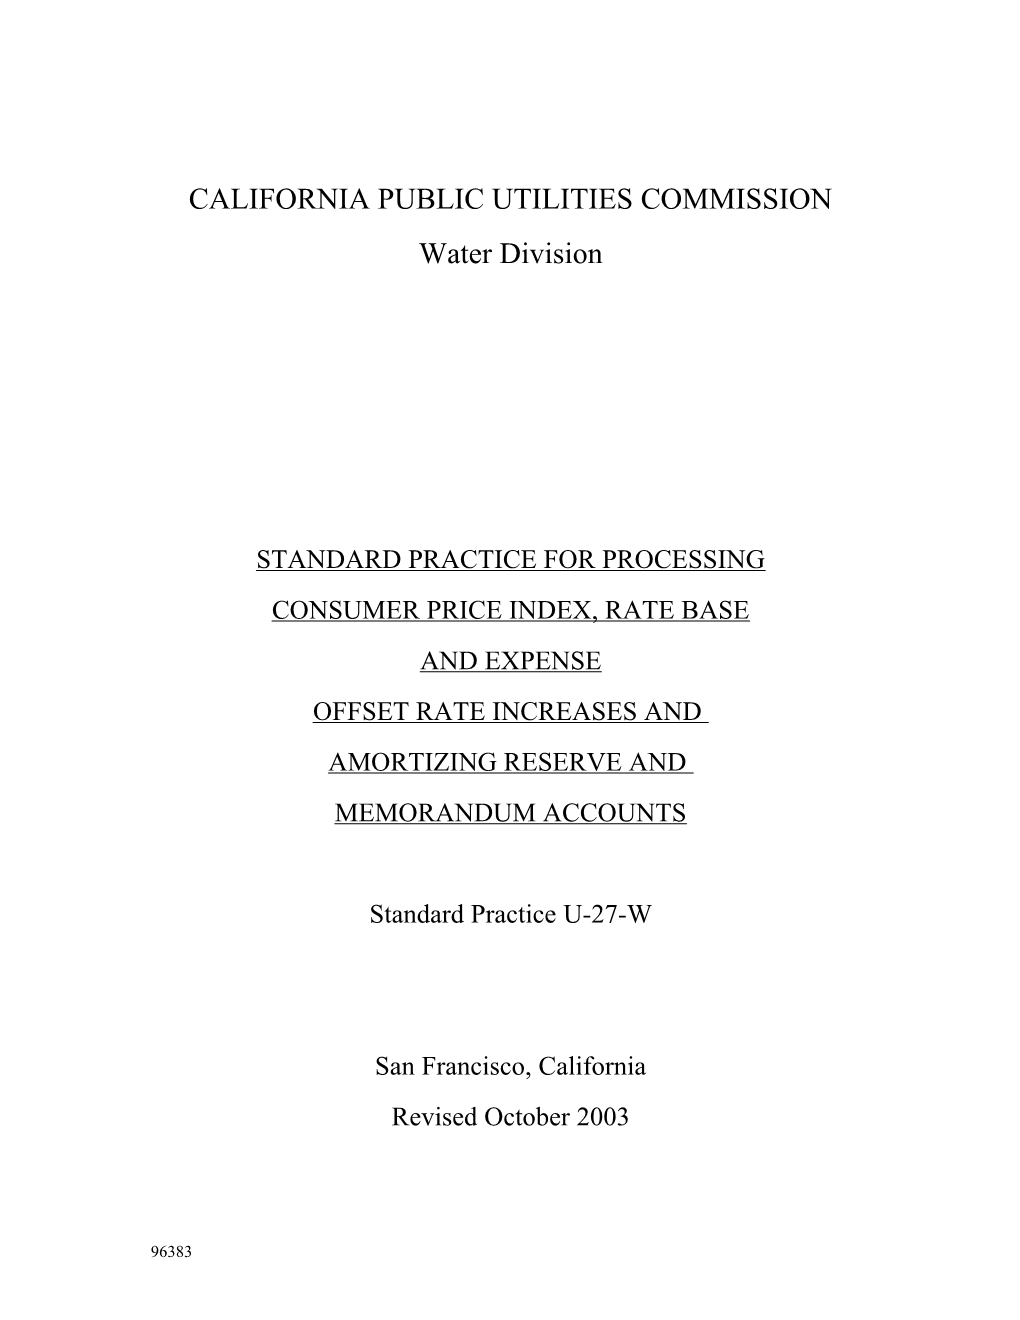 California Public Utilities Commission s1